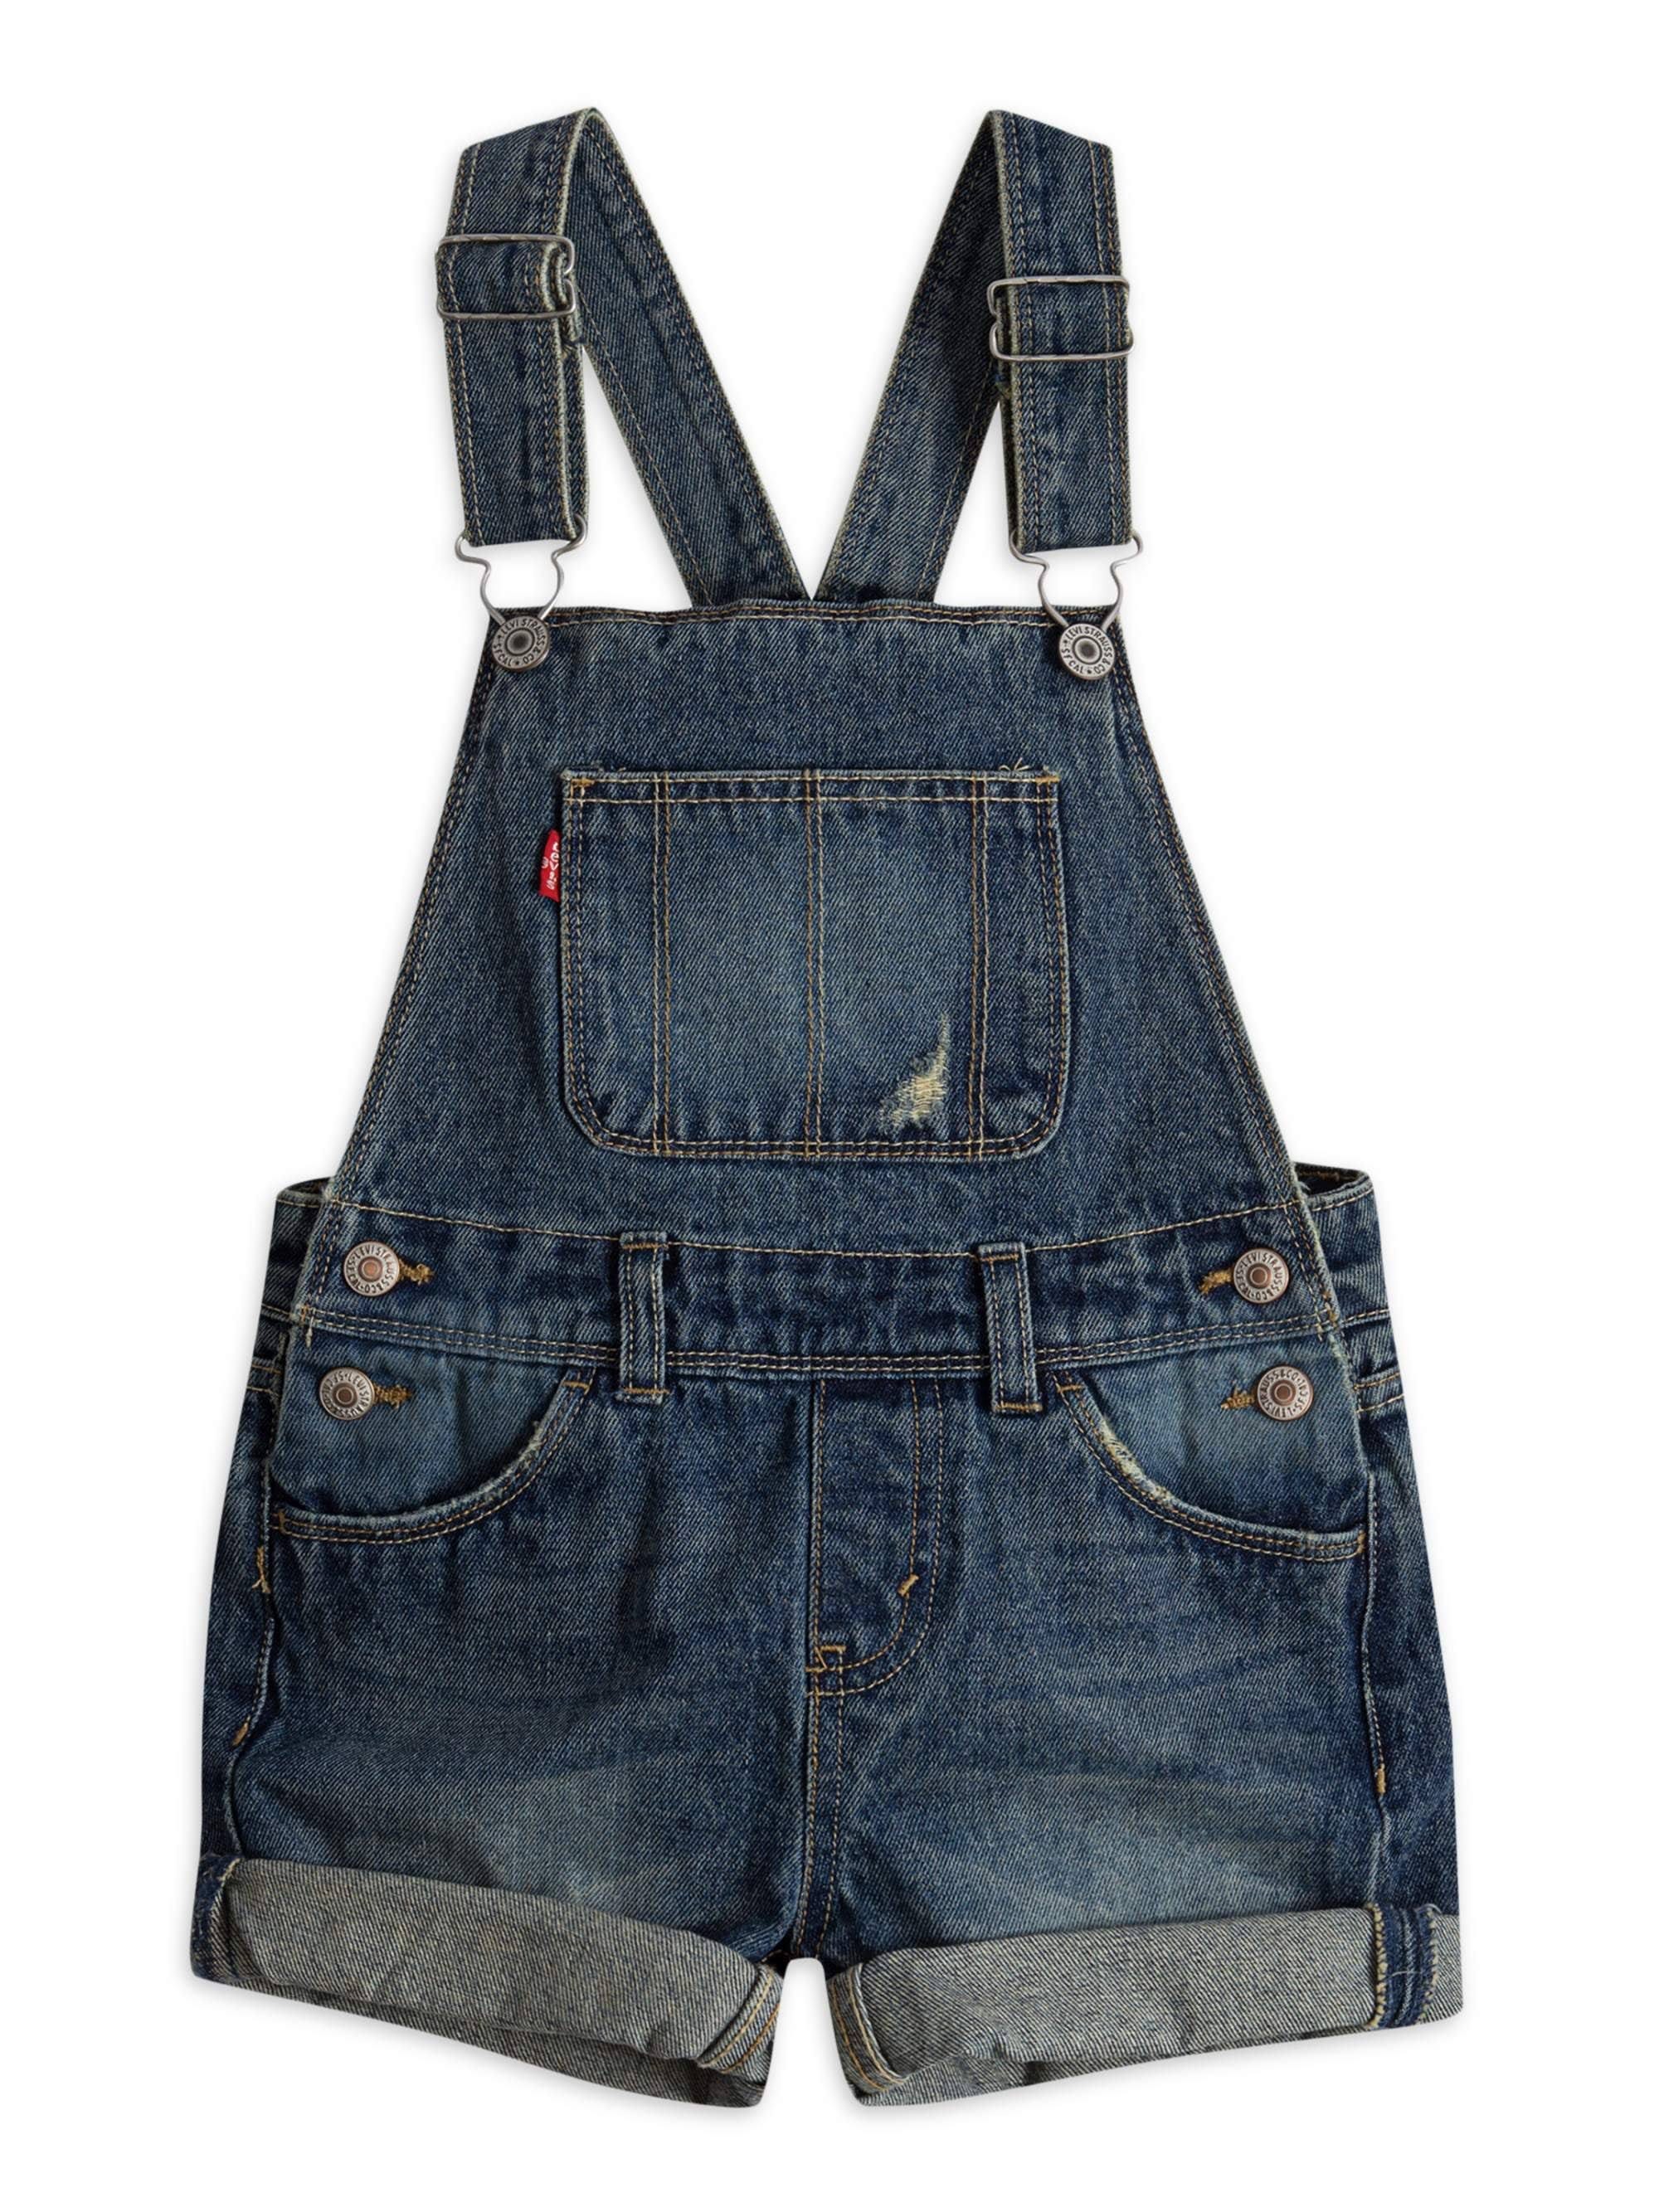 Vintage-Inspired Denim Shortalls for Girls | Image